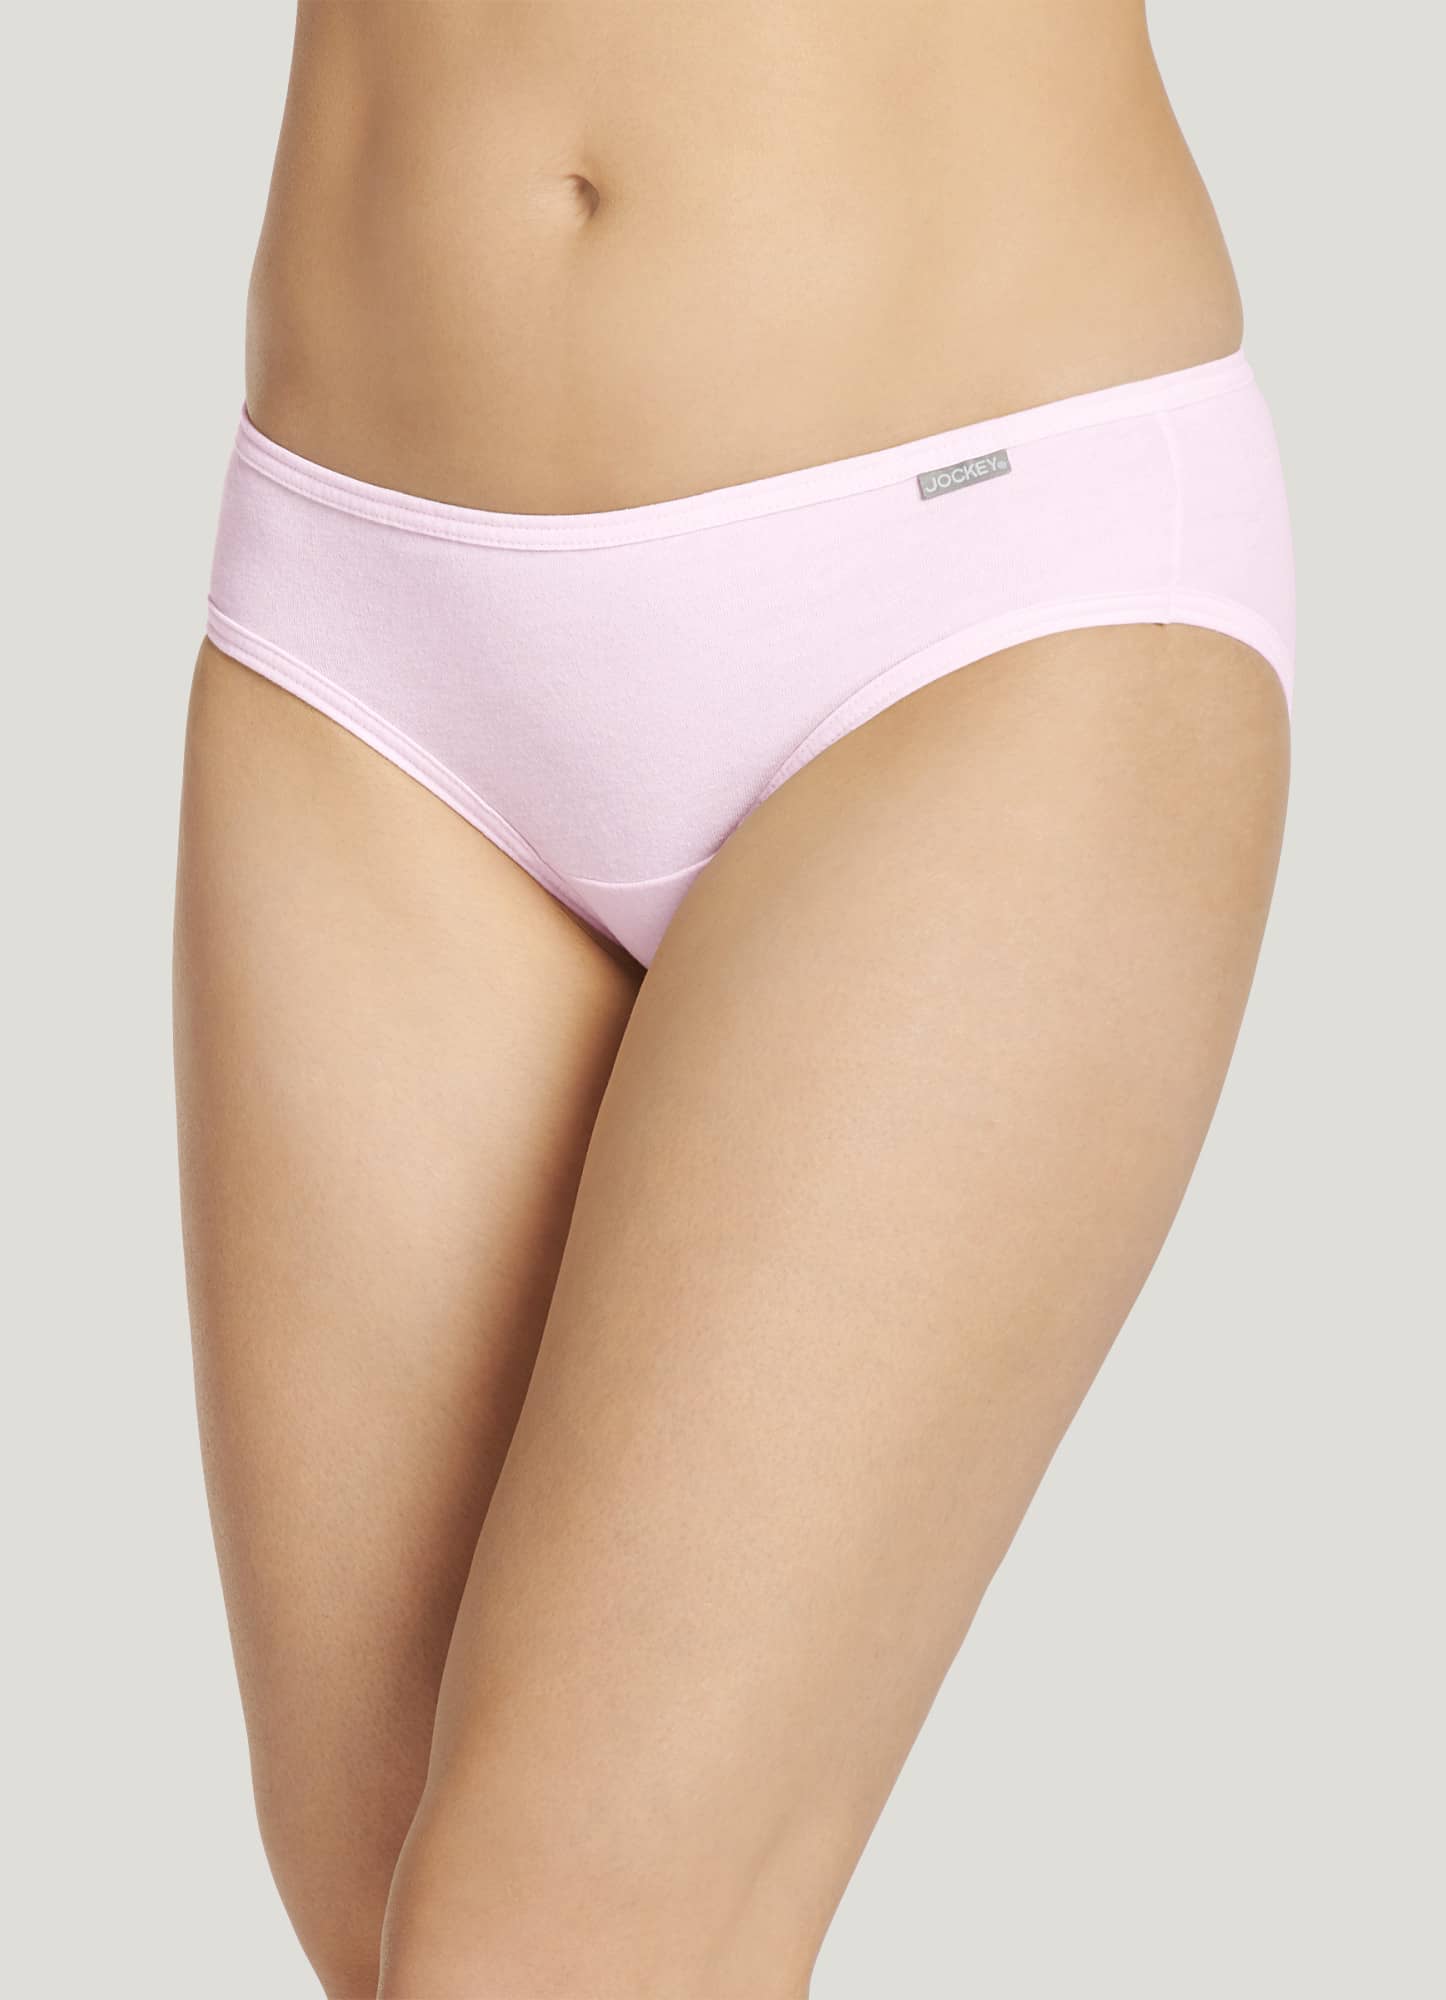 Jockey Women's Underwear Cheeky Modal Bikini, chevron/pink